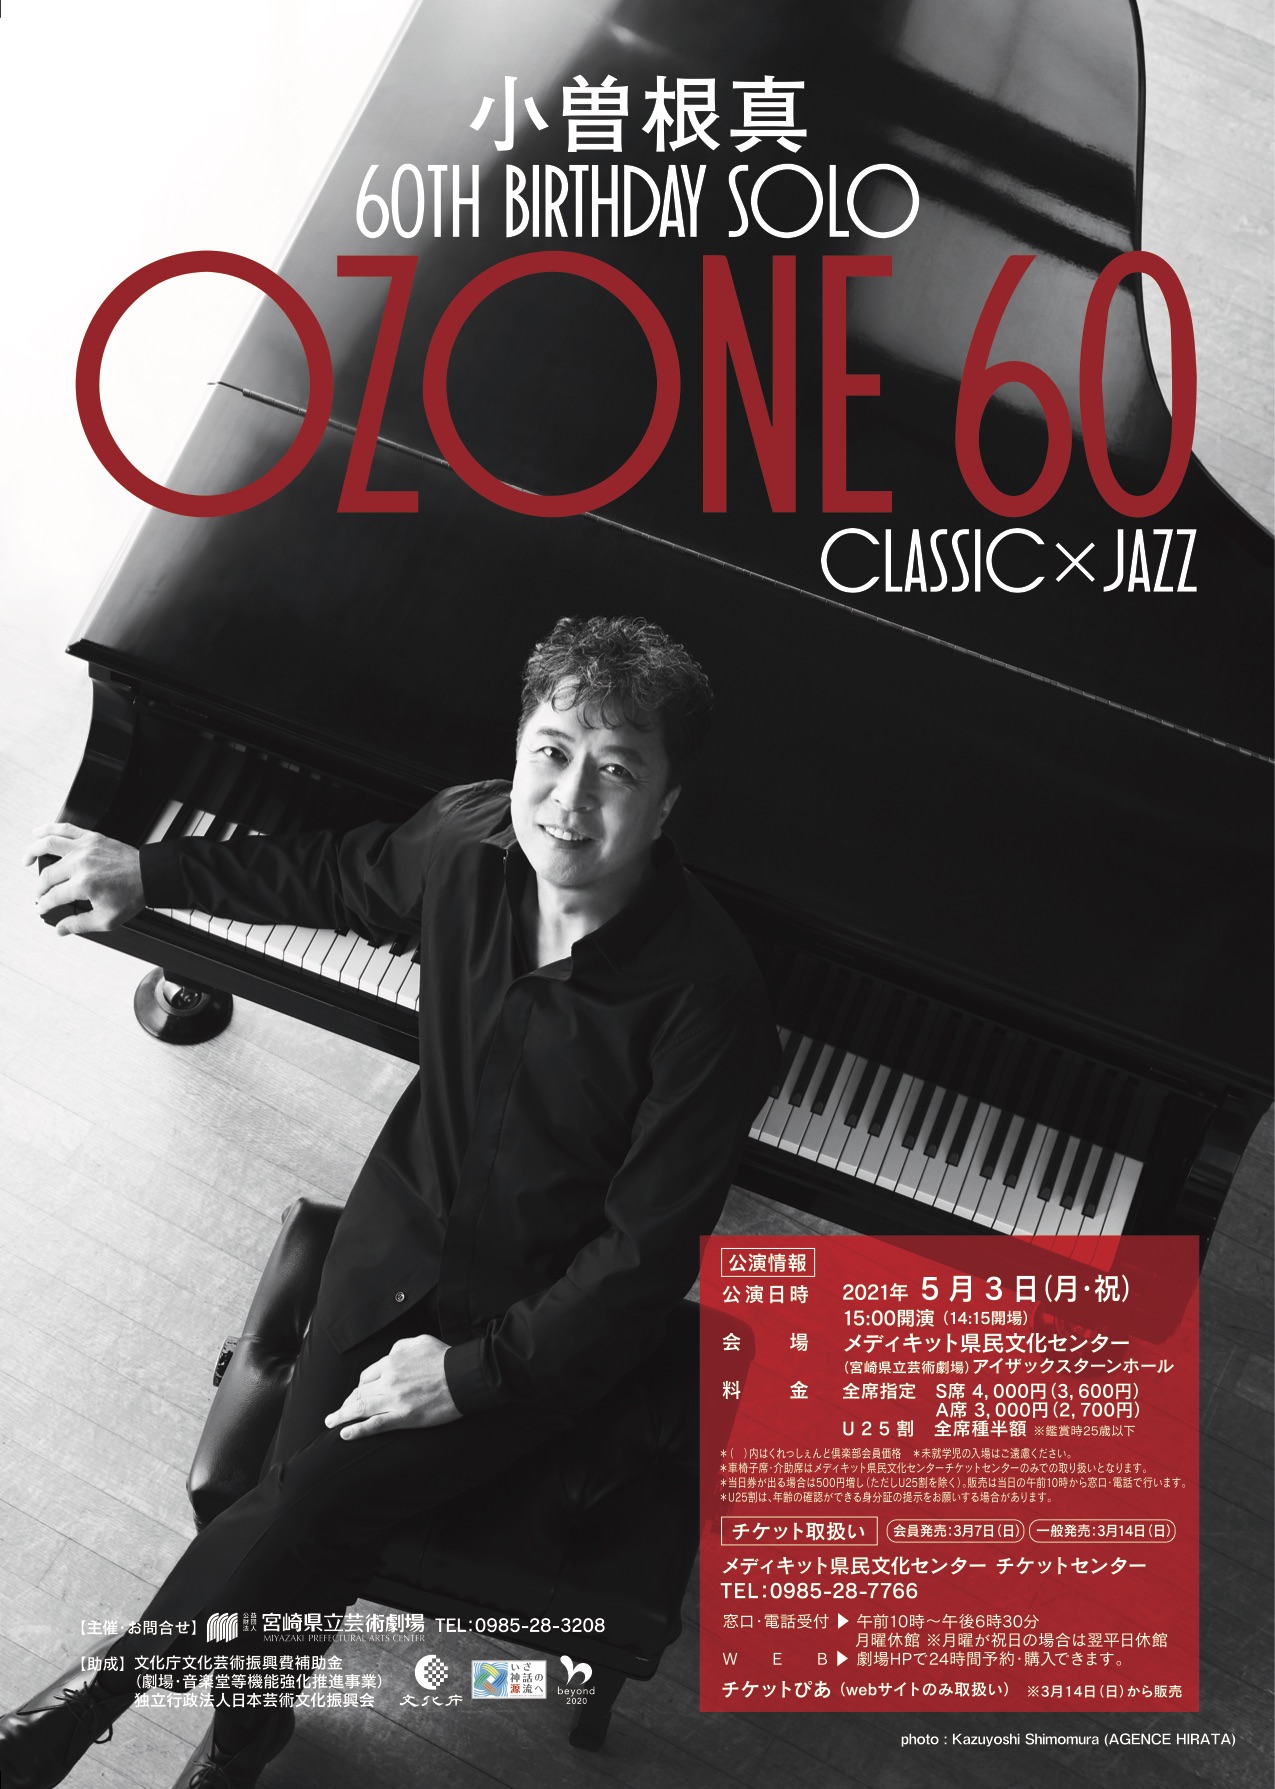 小曽根真 60th Birthday Solo Ozone60 Classic Jazz メディキット県民文化センター